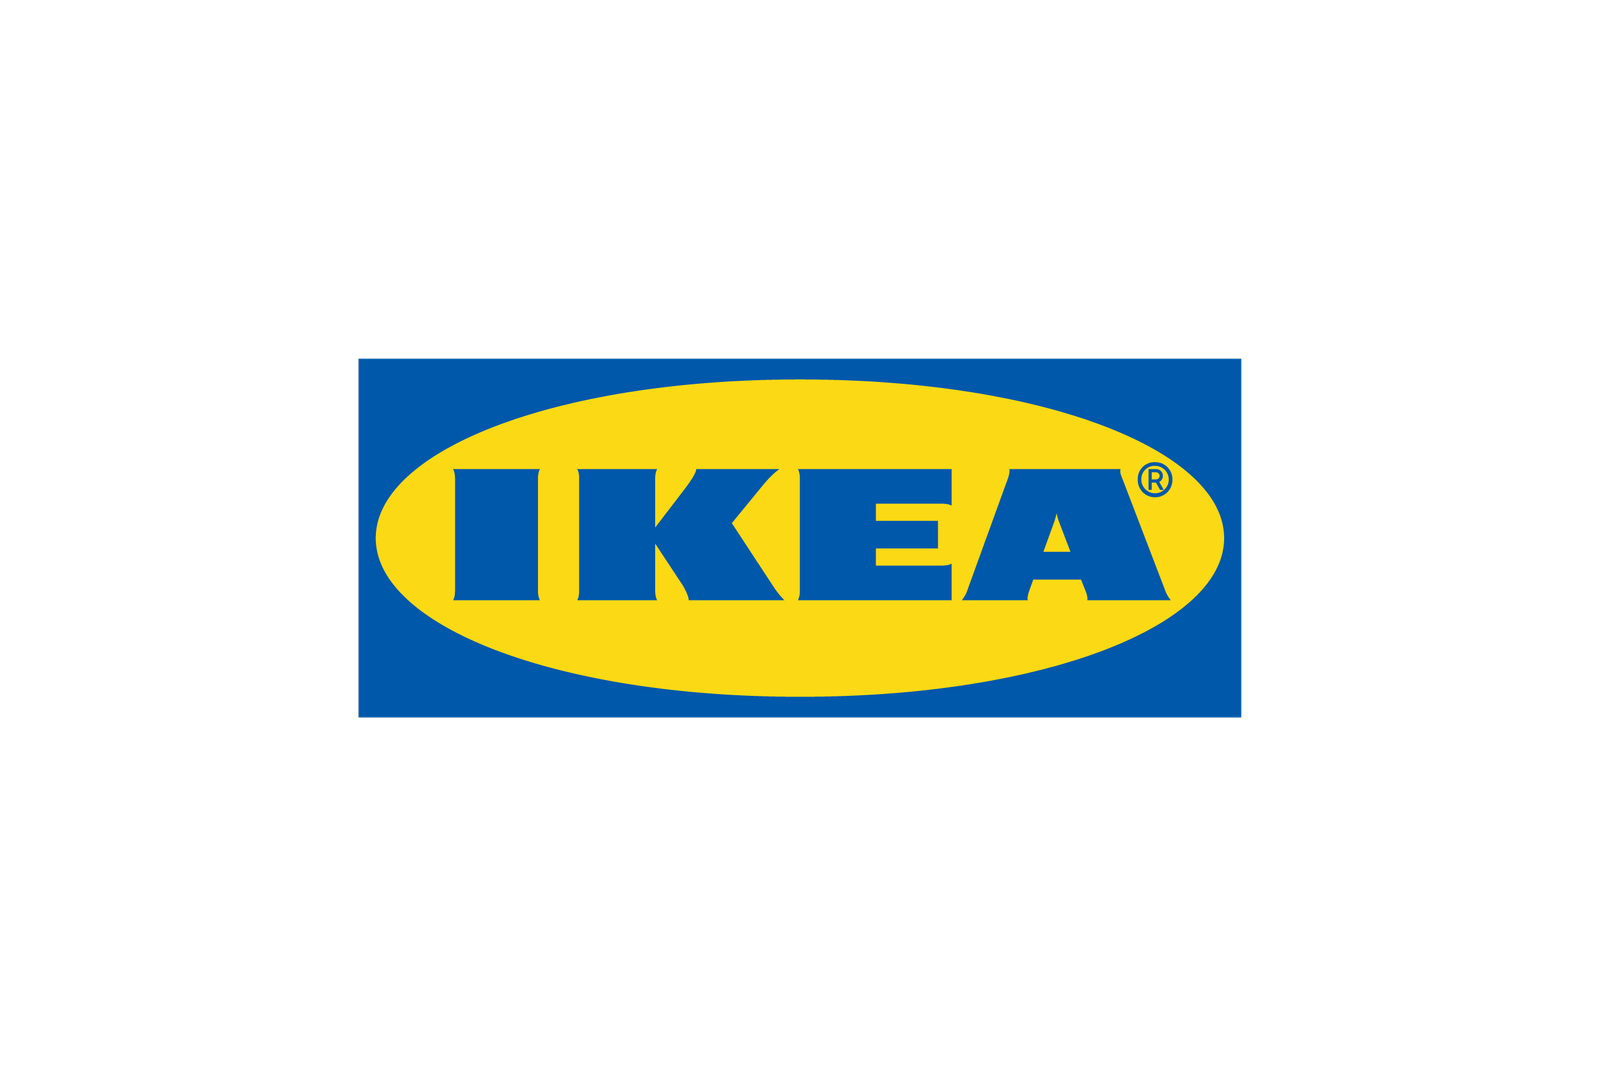 IKEA AS